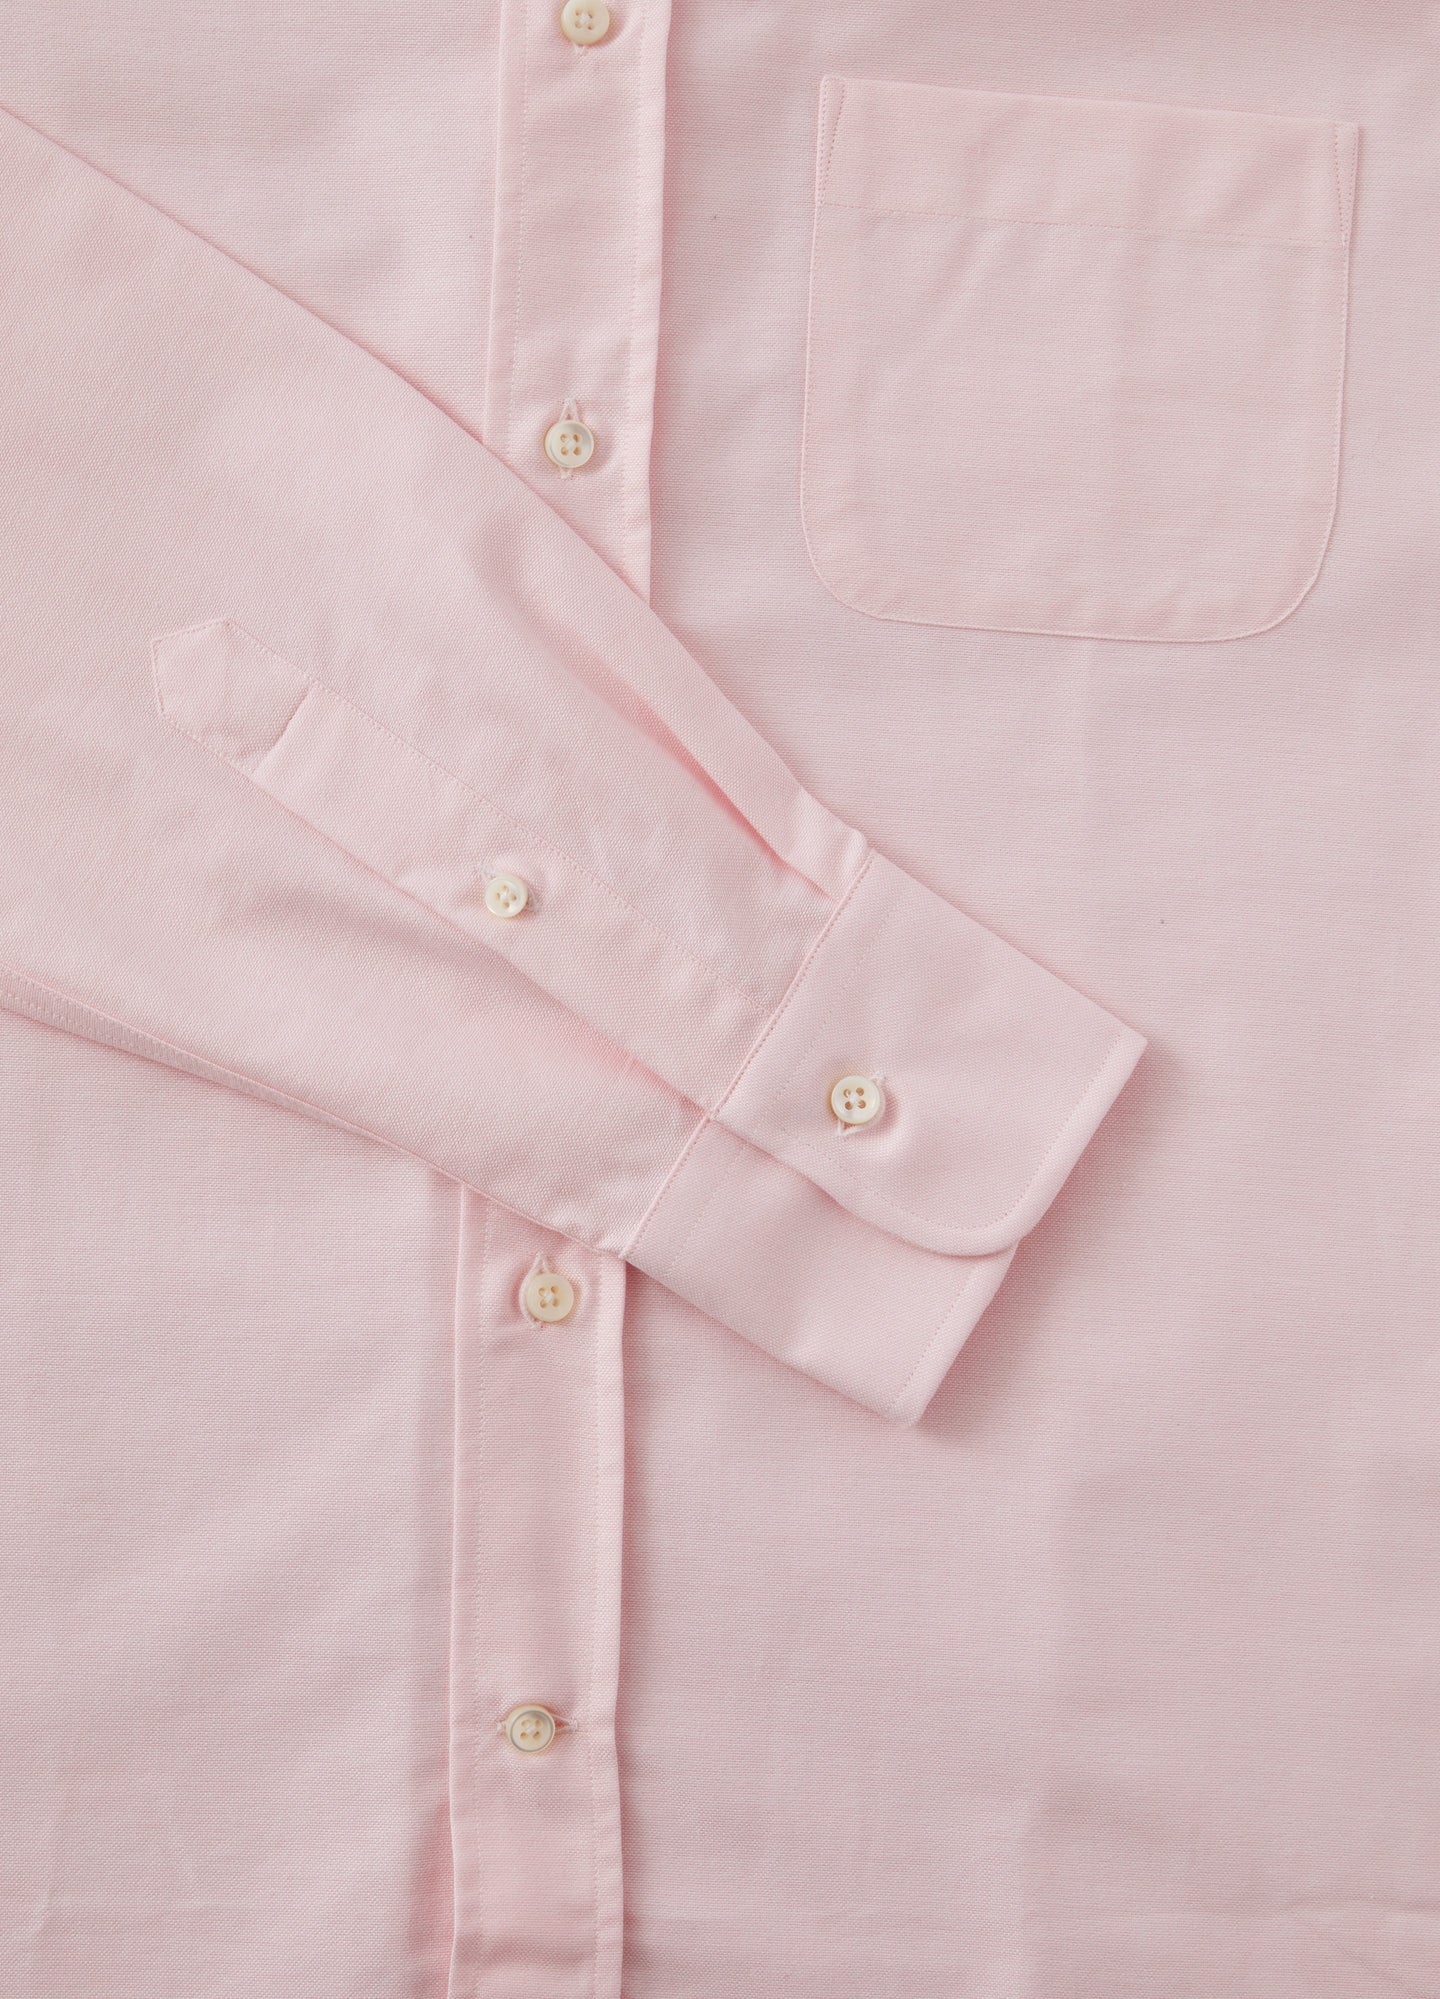 Ferdinand Button Down Shirt - Pink Berg & Berg